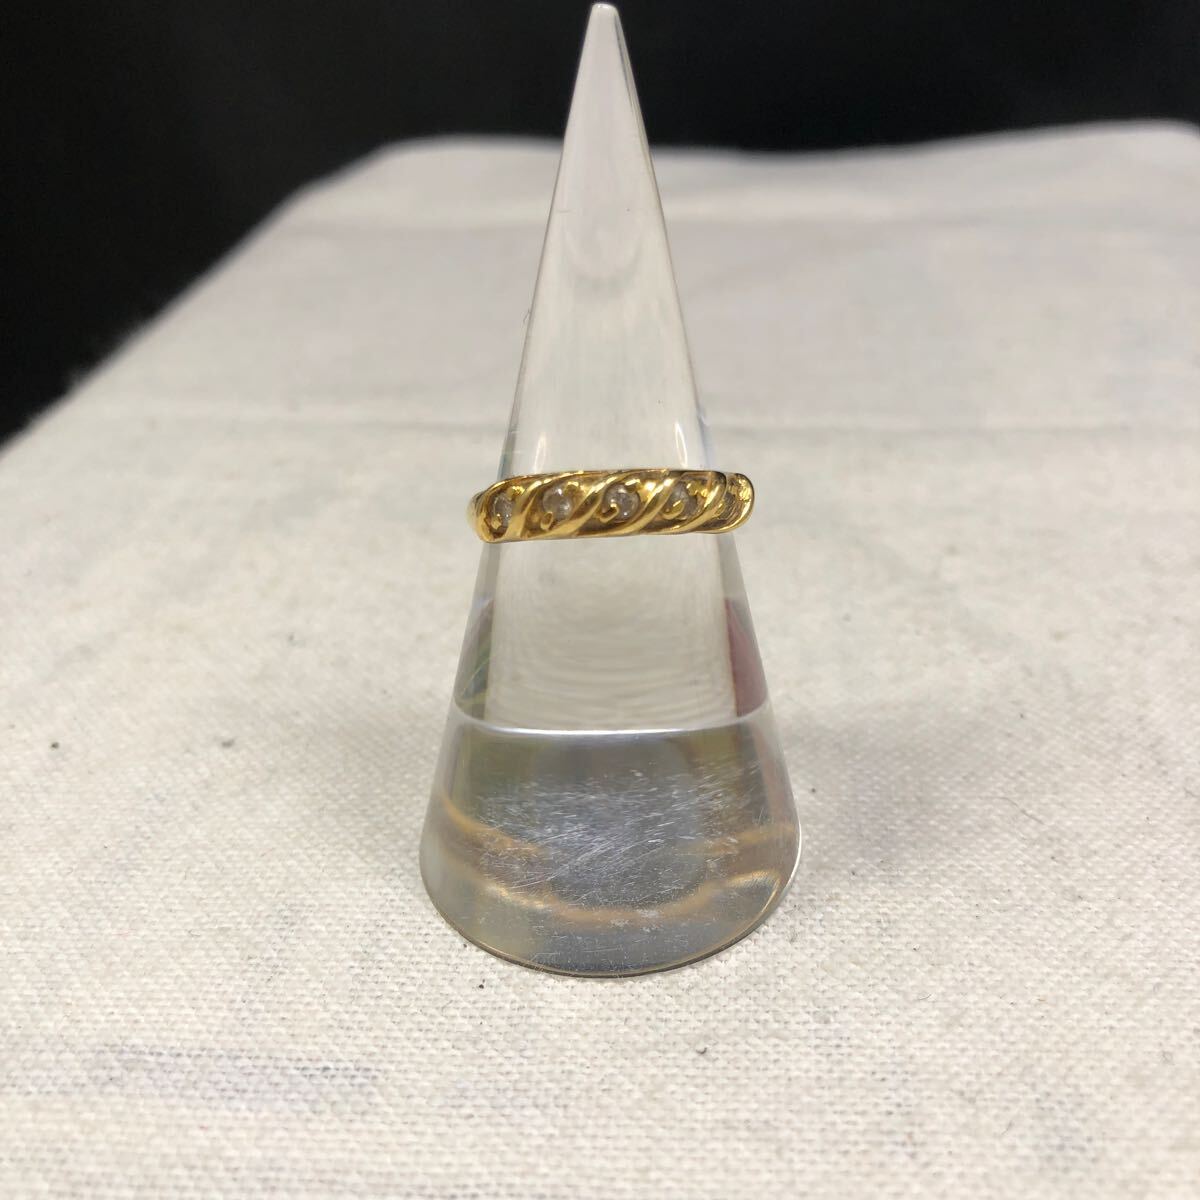  кольцо кольцо бриллиант 5 камень 0.21 carat K18 18 золотой желтое золото аксессуары драгоценный металл полная масса 2.1g 12.5 номер te The Yinling g